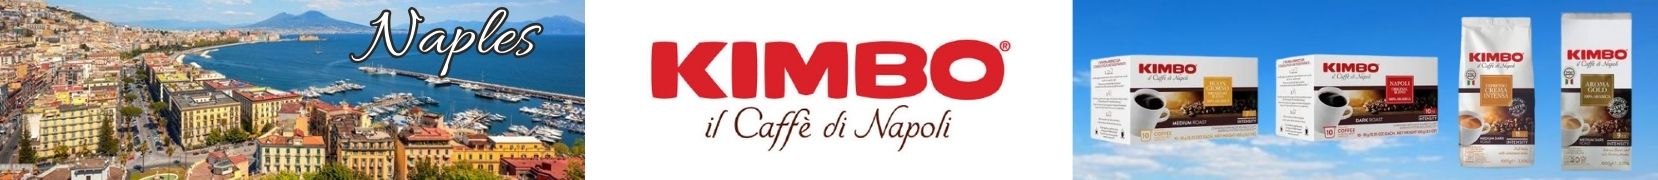 Kimbo il Caffe di Napoli